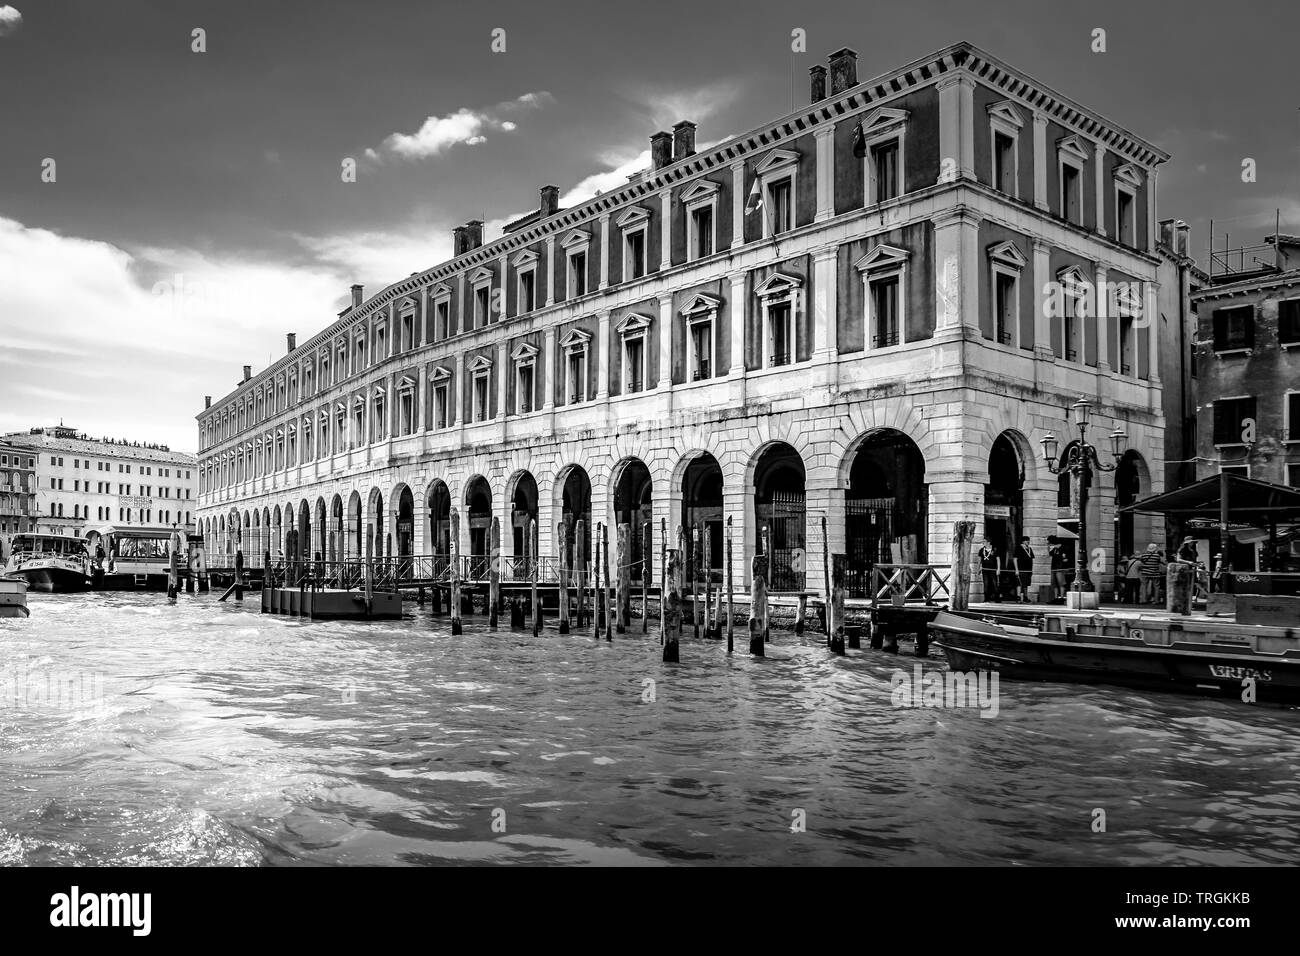 Palazzo dei Camerlenghi, Venice, Italy Stock Photo